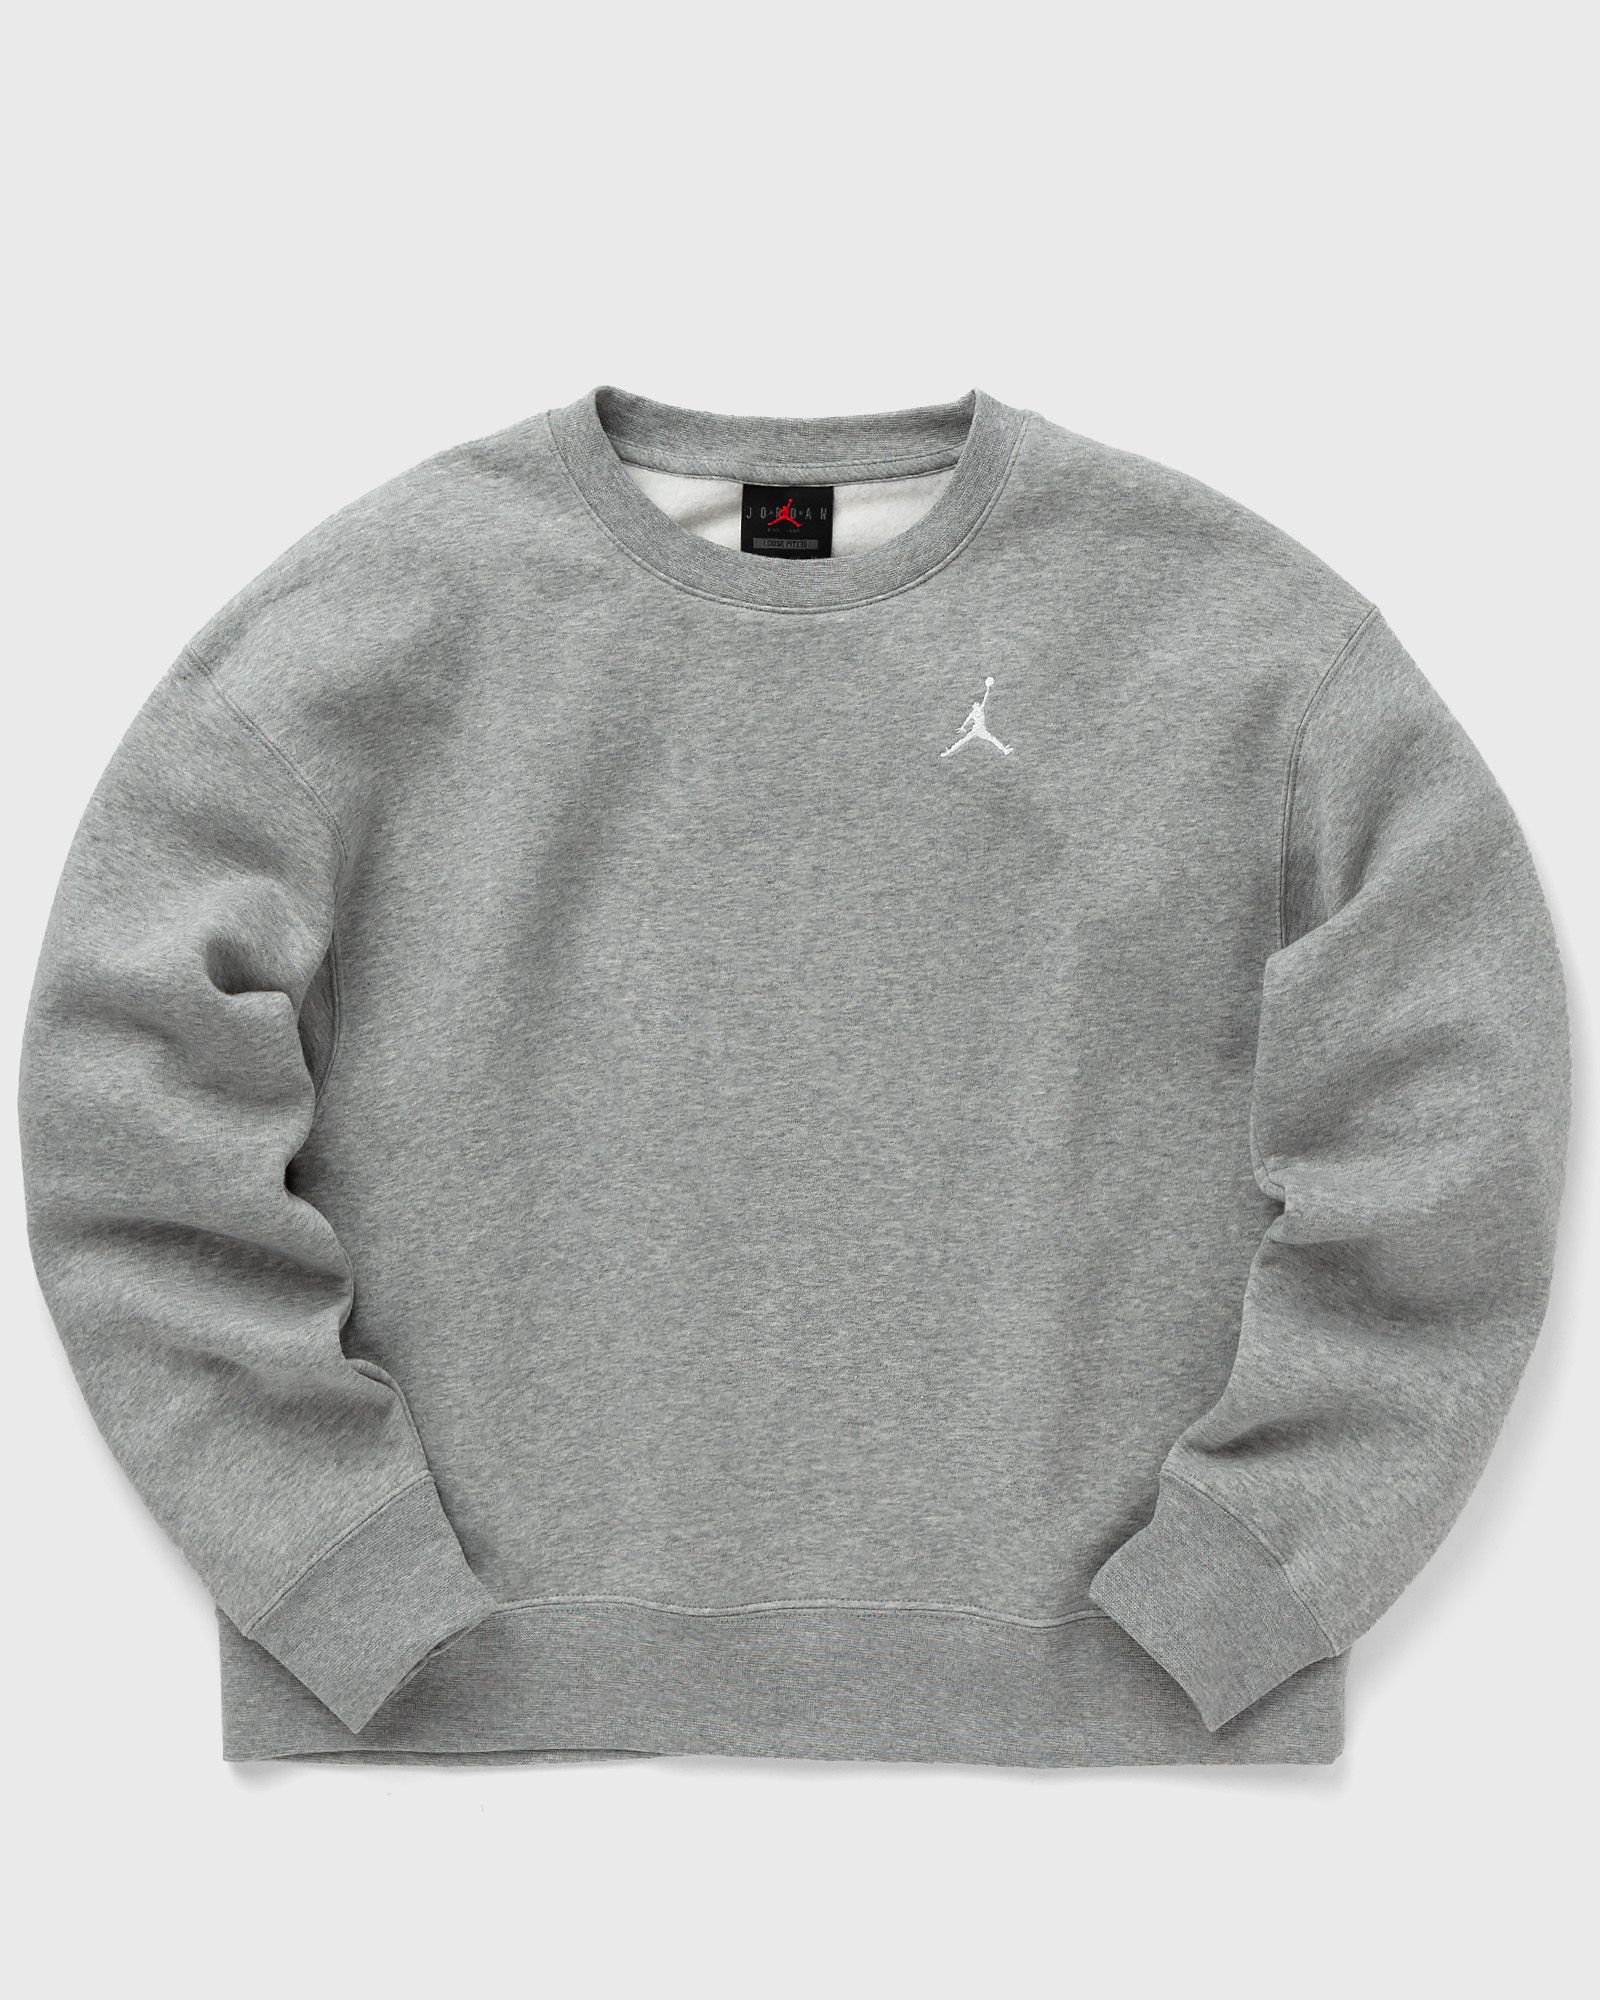 Jordan - brooklyn fleece women's crewneck sweatshirt women sweatshirts grey in größe:xs